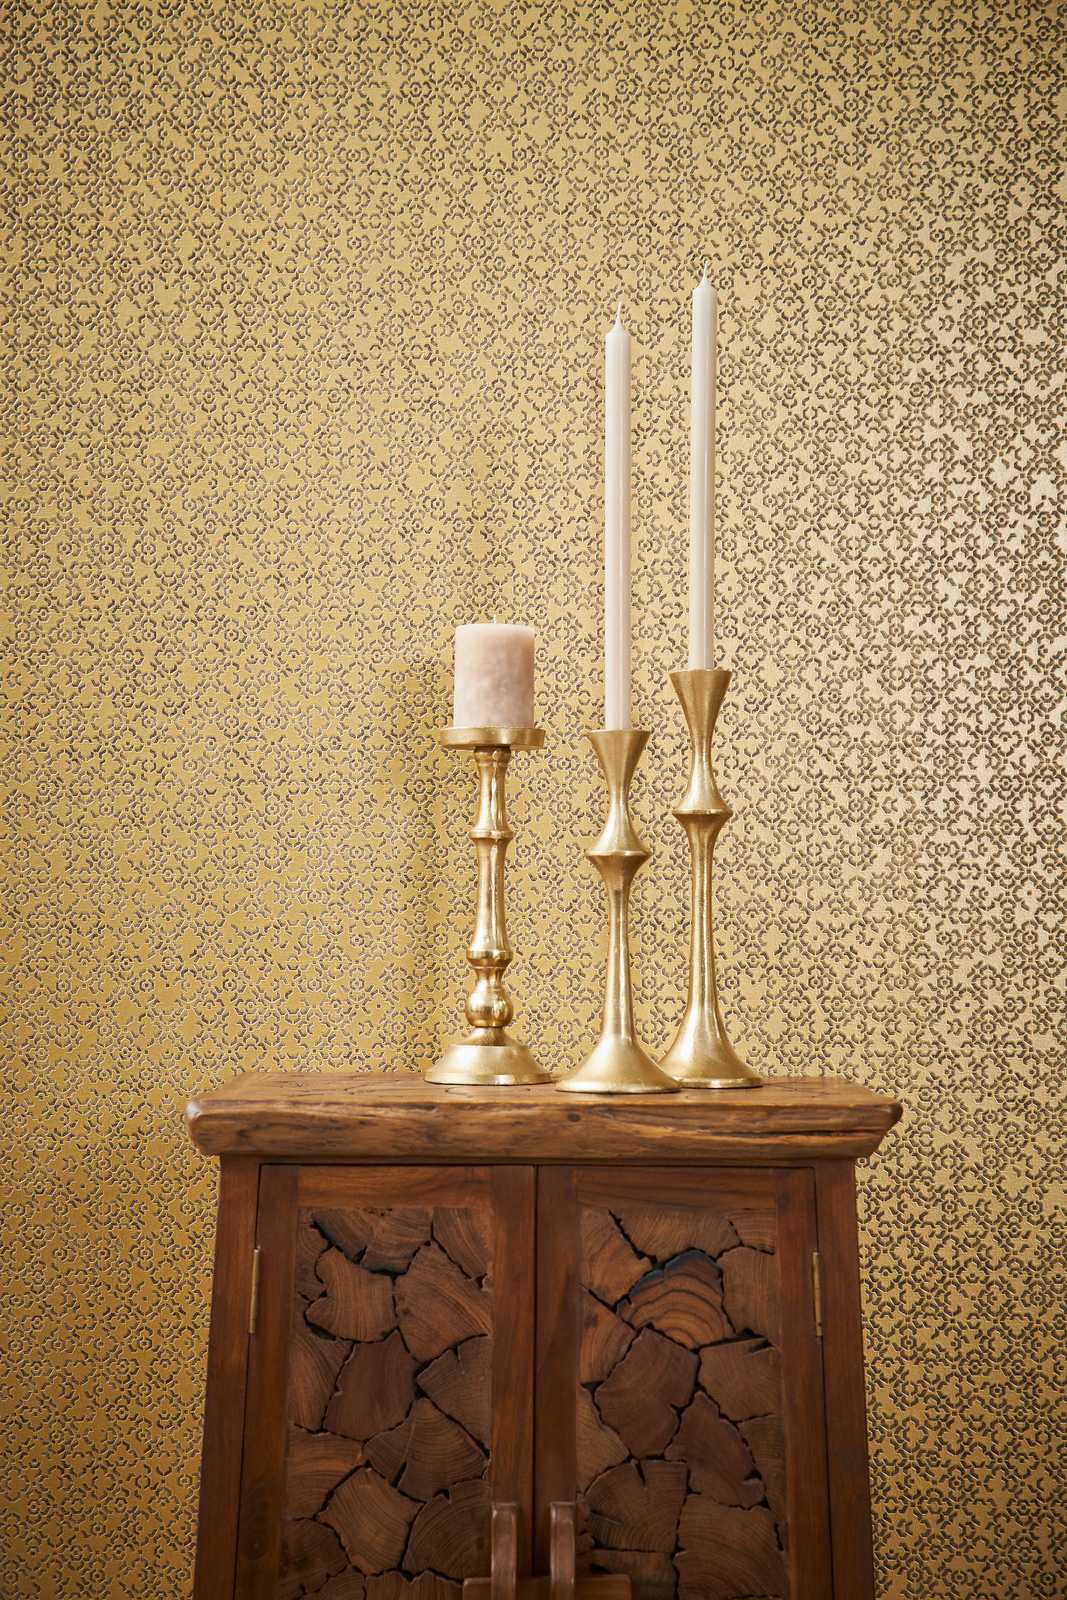             Gouden patroonbehang met 3D effect & metallic glans - Bruin, Geel, Metallic
        